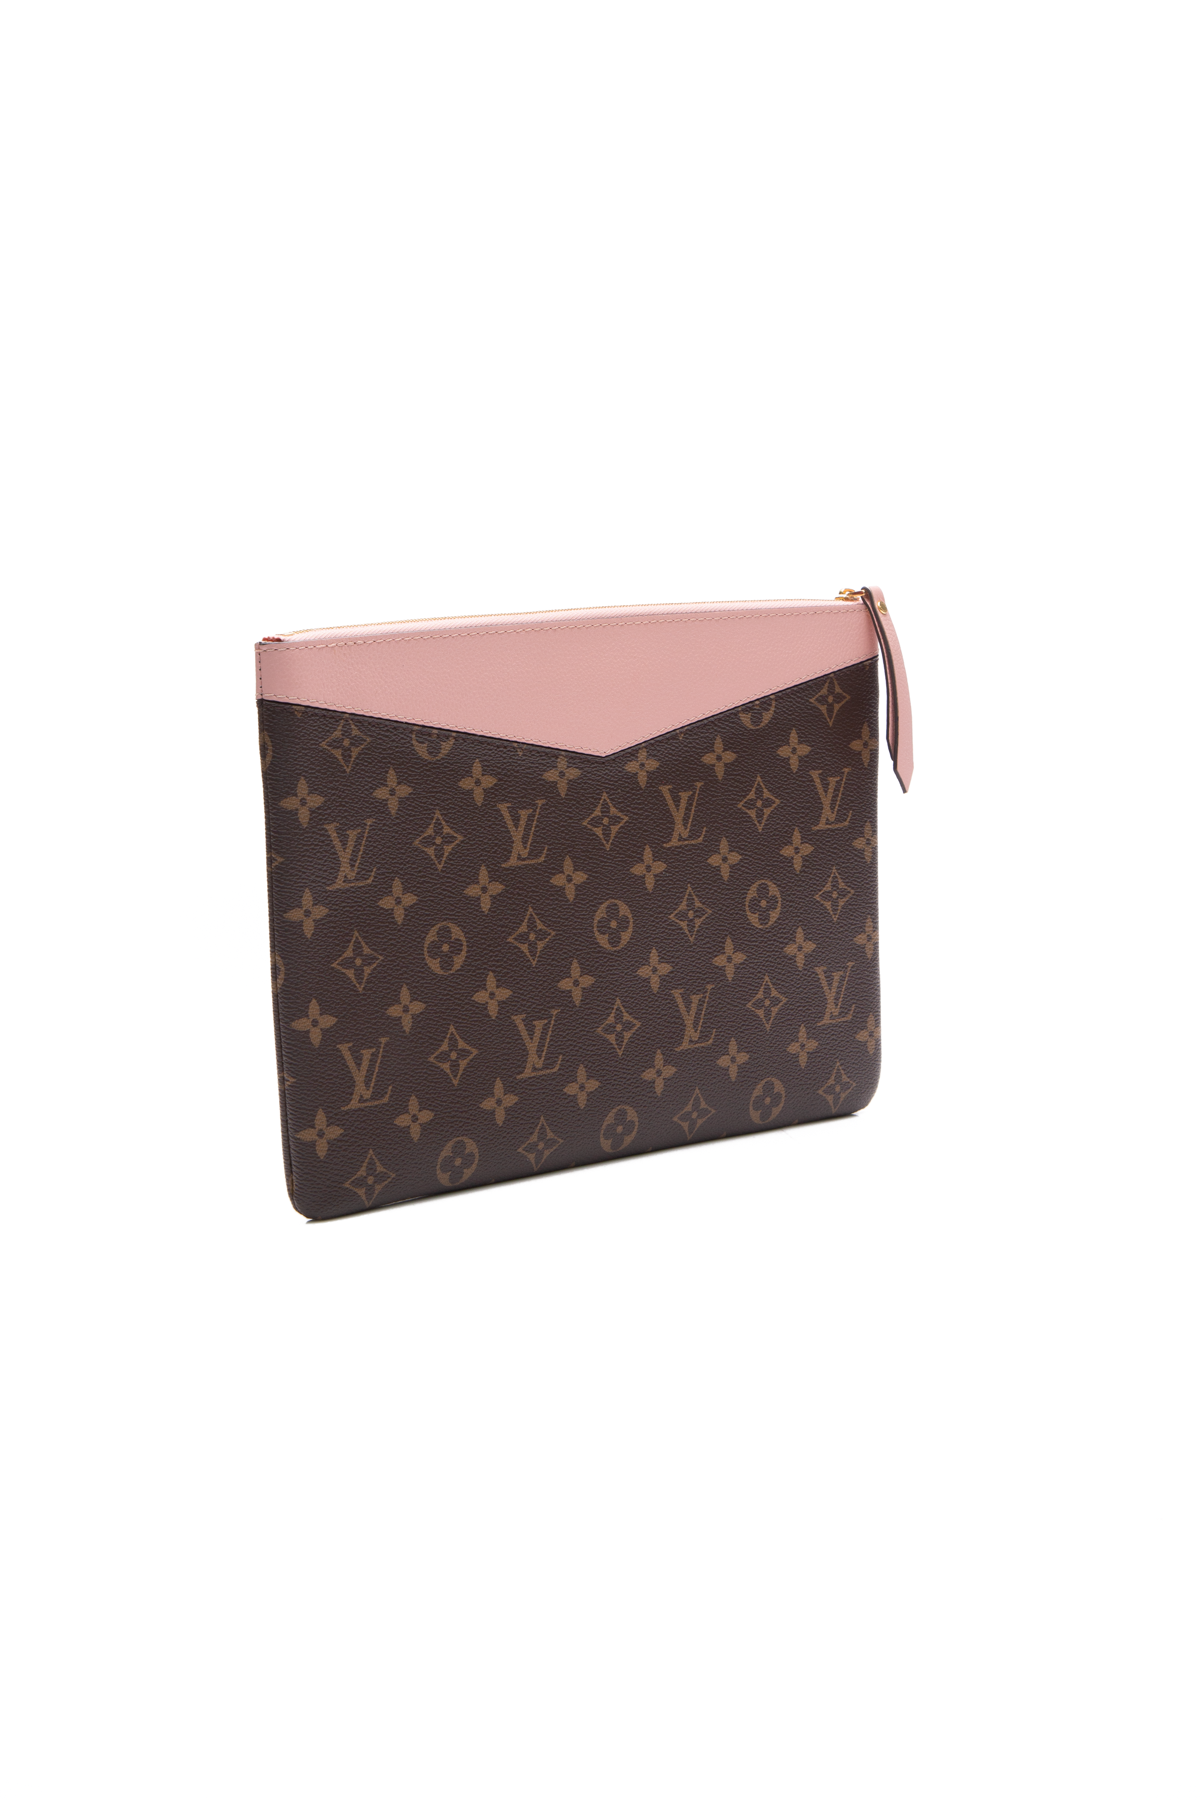 Louis Vuitton, Bags, Soldlouis Vuitton Monogram Daily Pouch